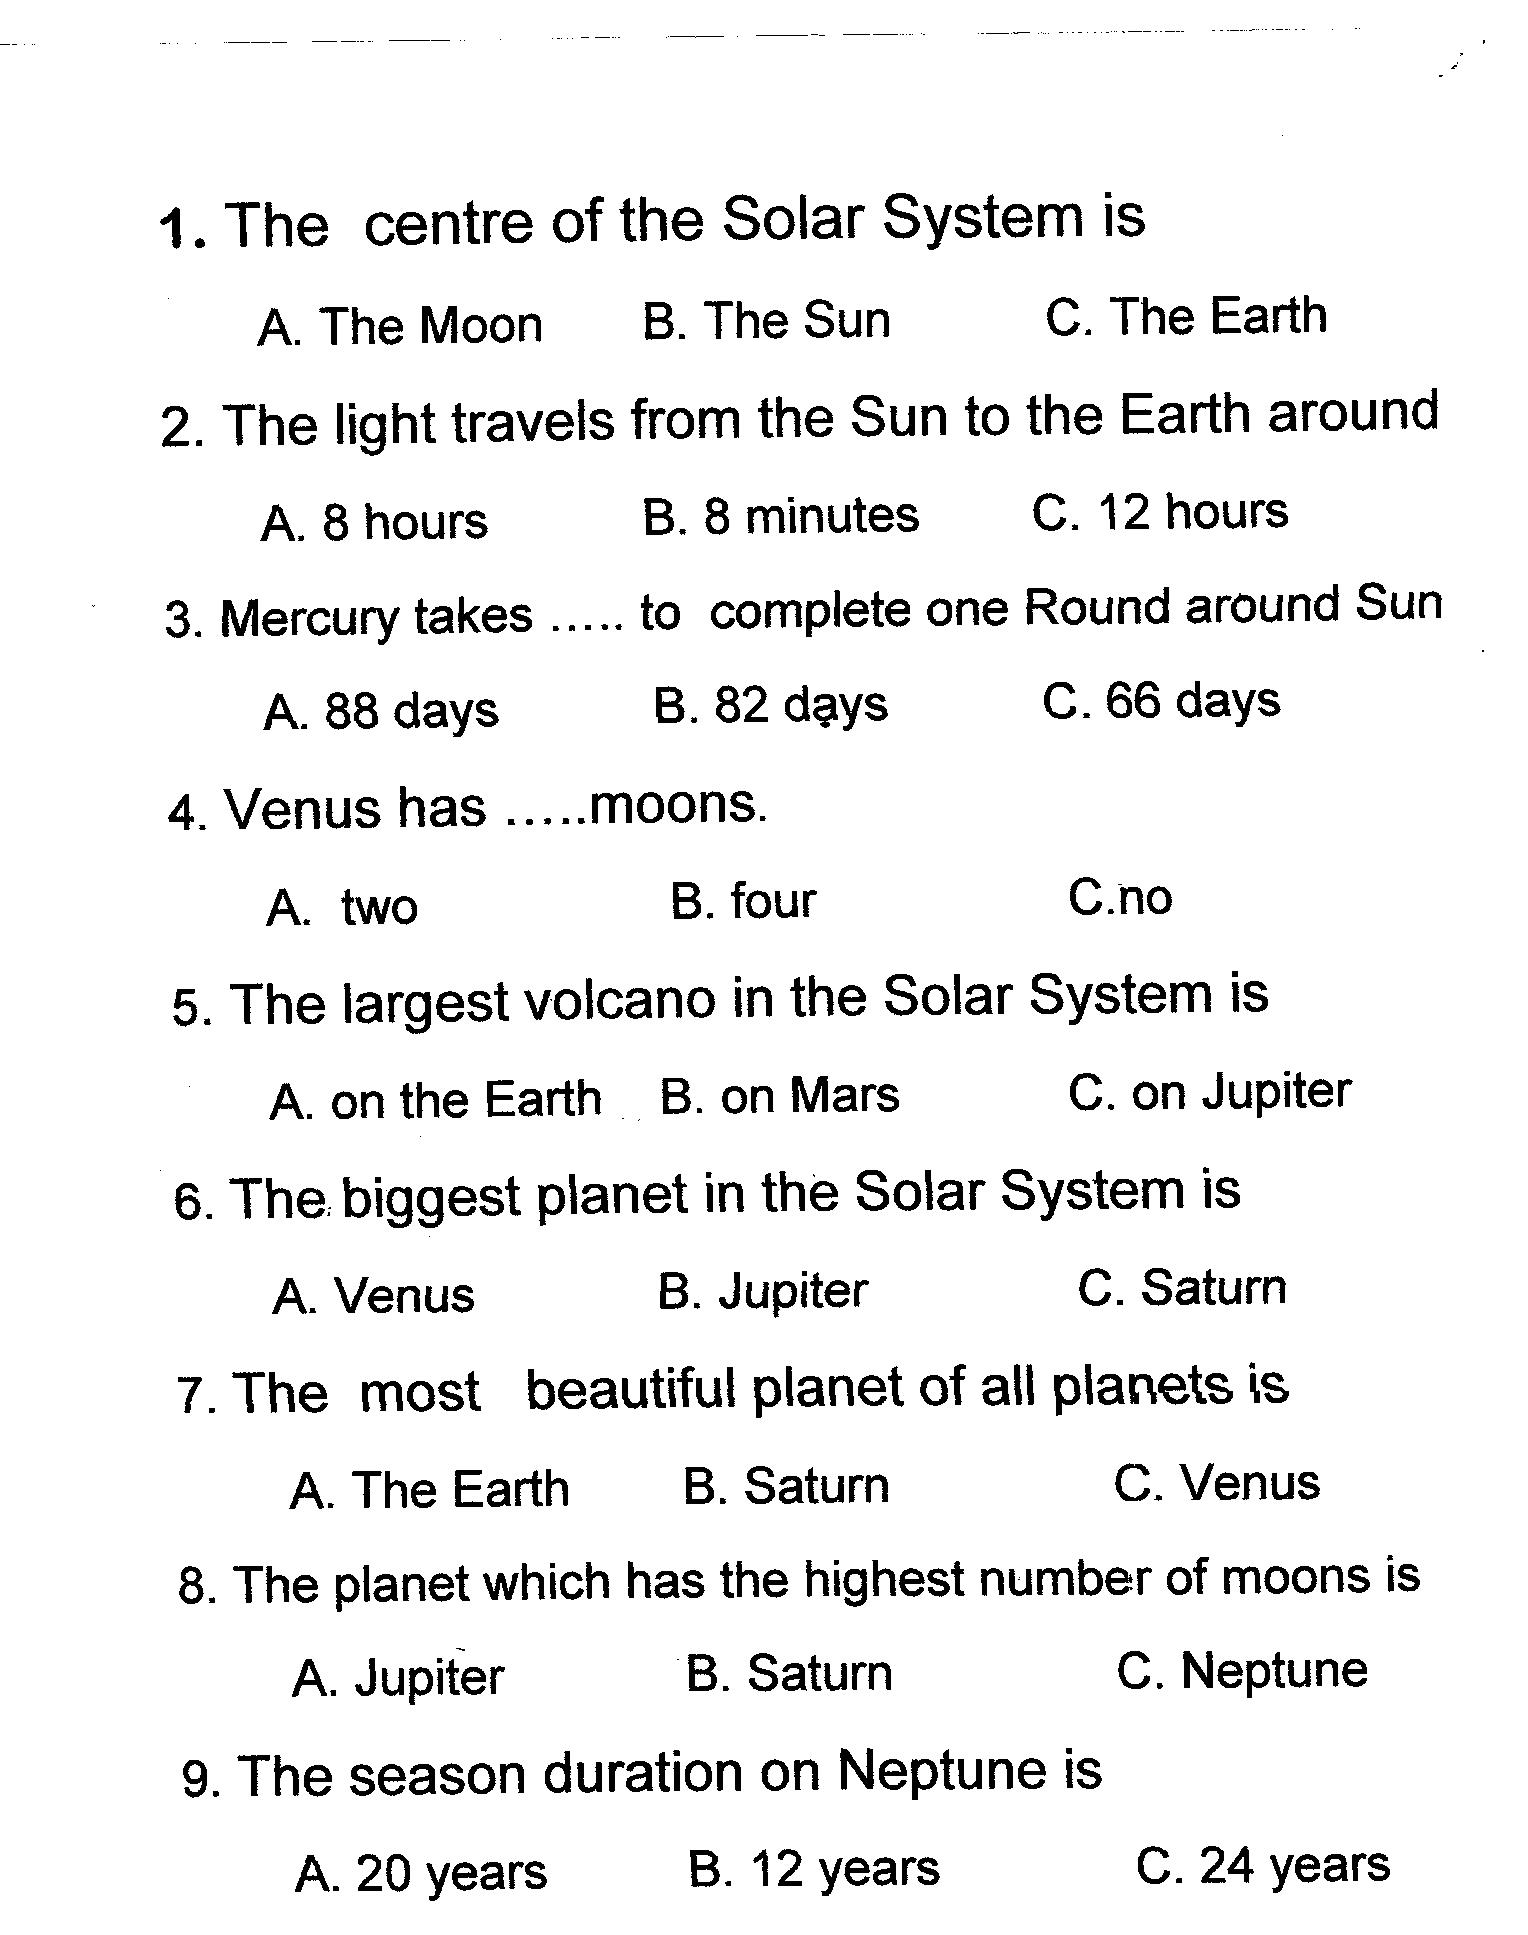 Конспект урока- соревнования на тему The Planets of the Solar System